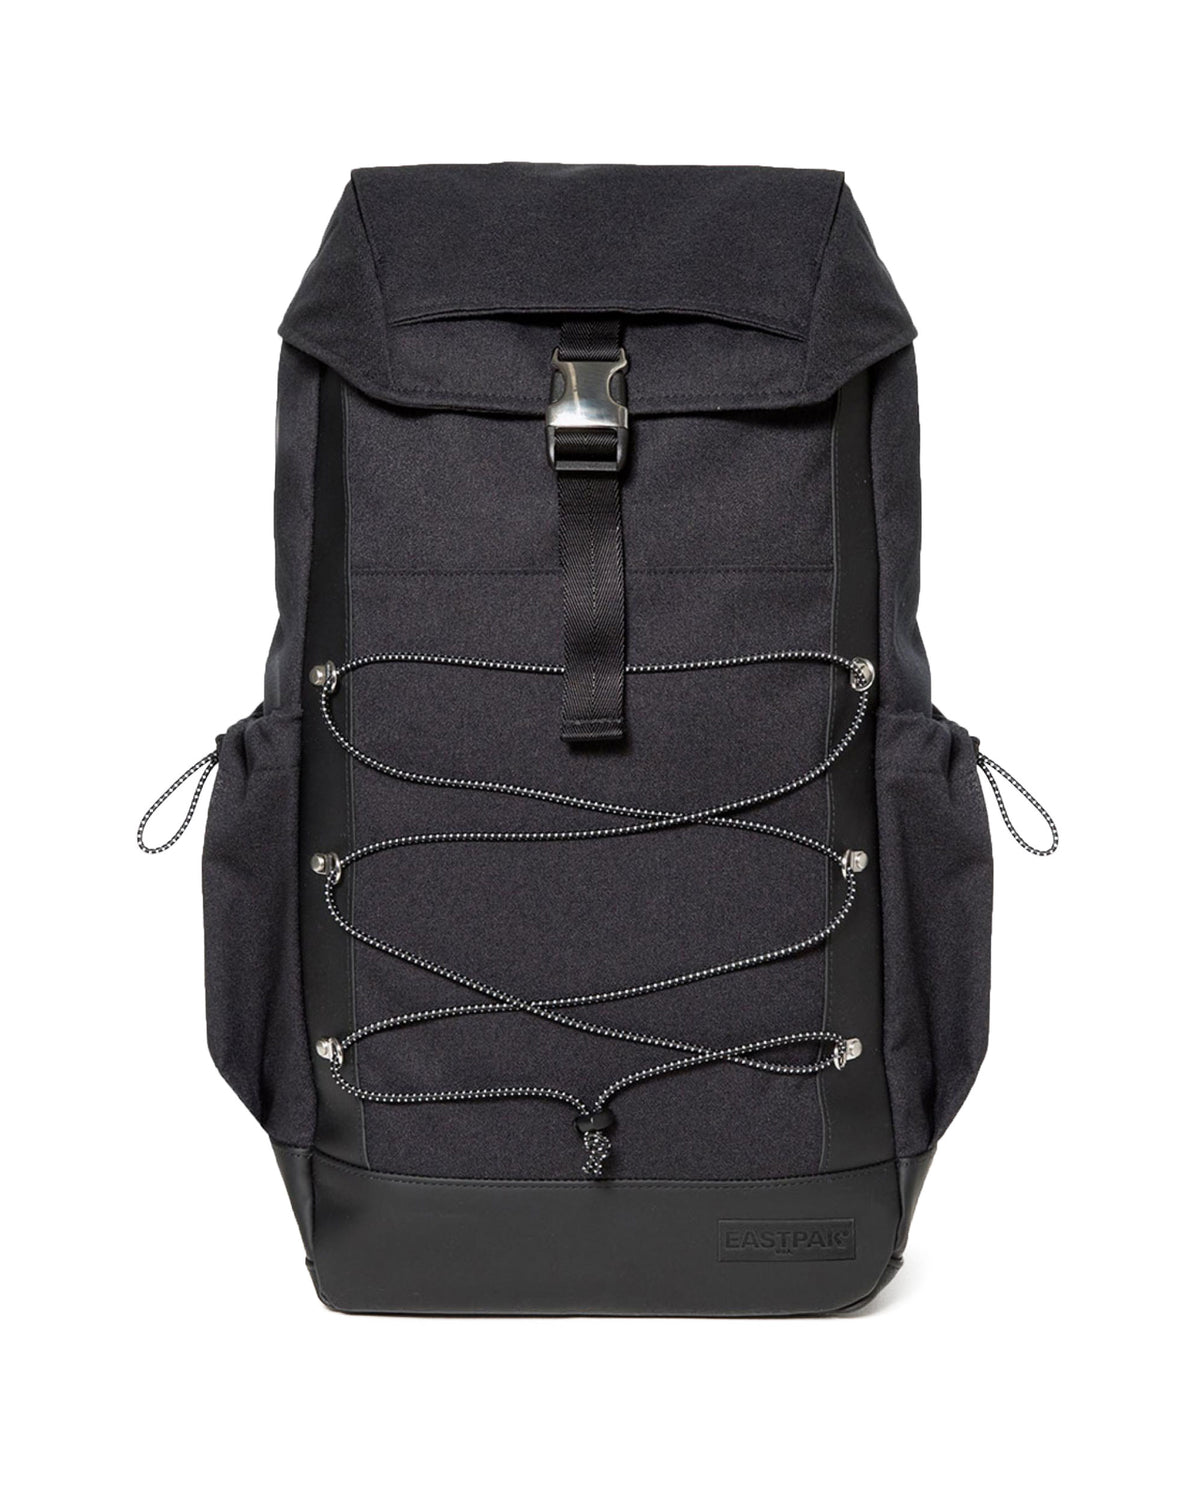 Backpack Eastpak bust Rugged black